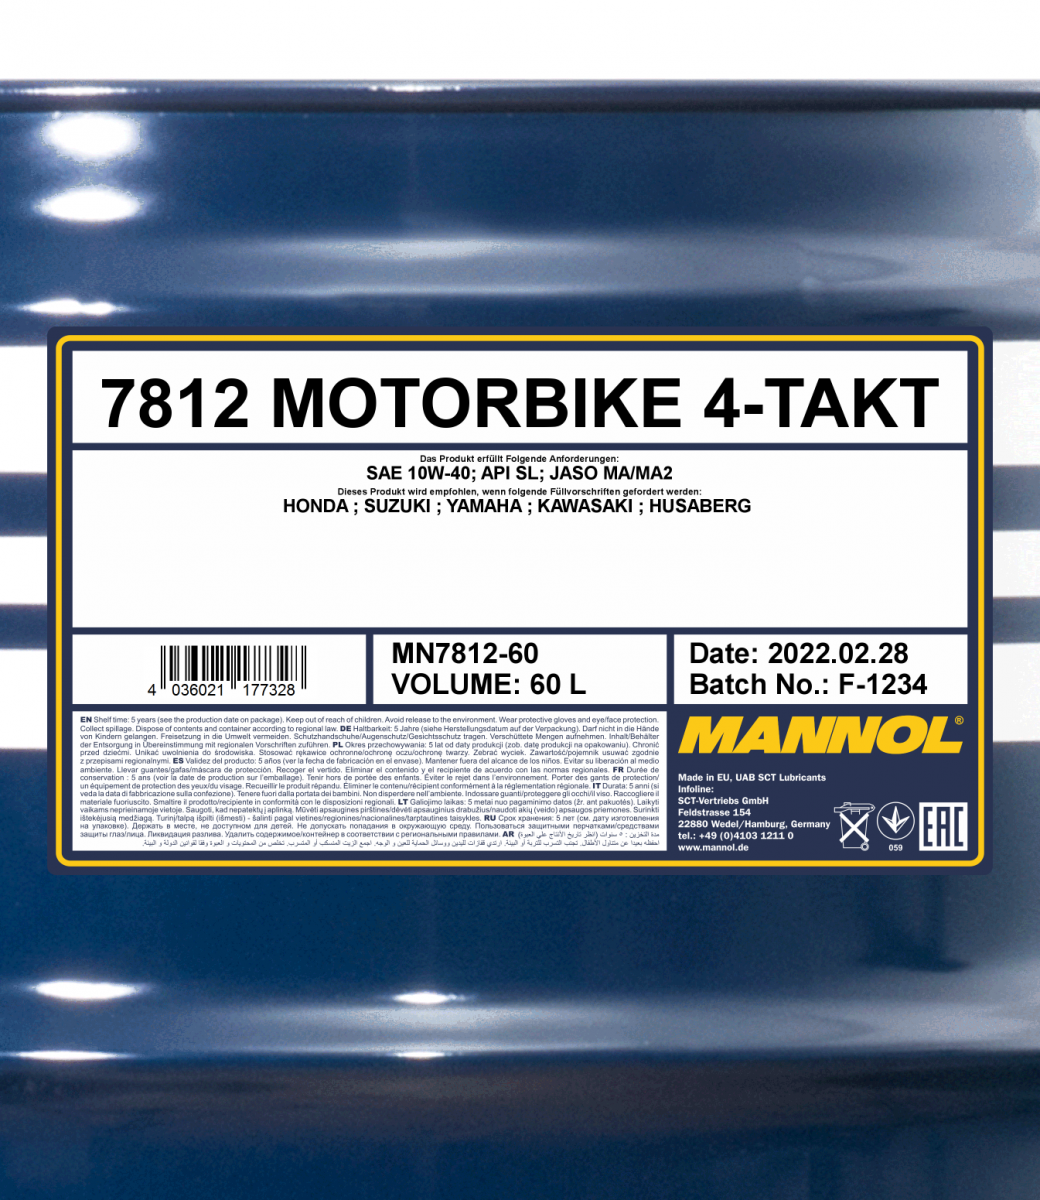 10W-40 Mannol 7812 Motorbike 4-Takt Motoröl Motorrad 60 Liter